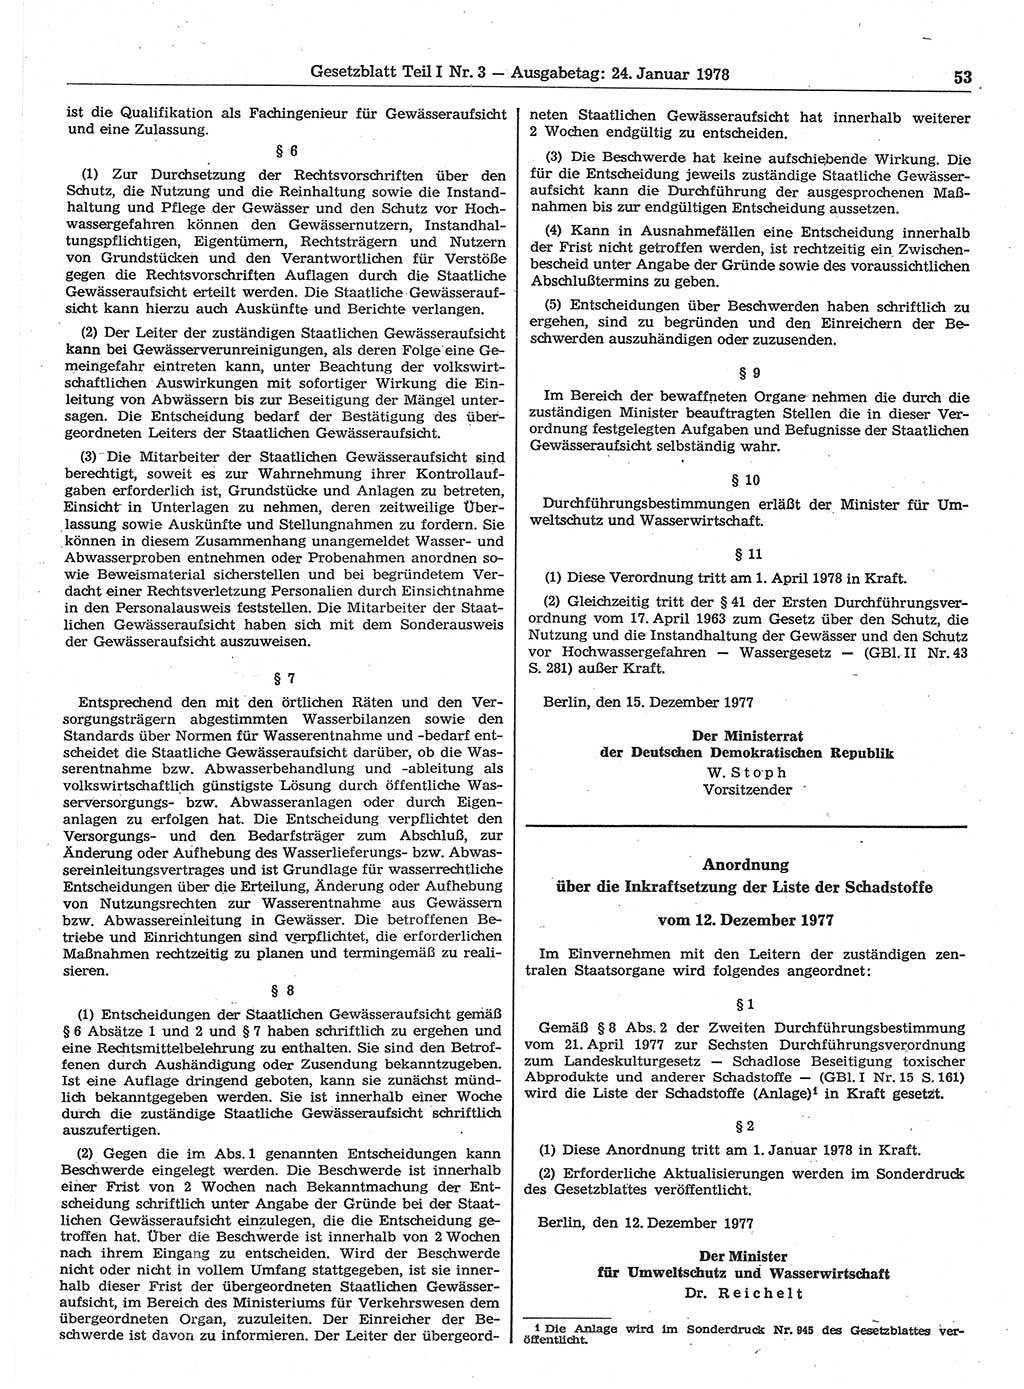 Gesetzblatt (GBl.) der Deutschen Demokratischen Republik (DDR) Teil Ⅰ 1978, Seite 53 (GBl. DDR Ⅰ 1978, S. 53)